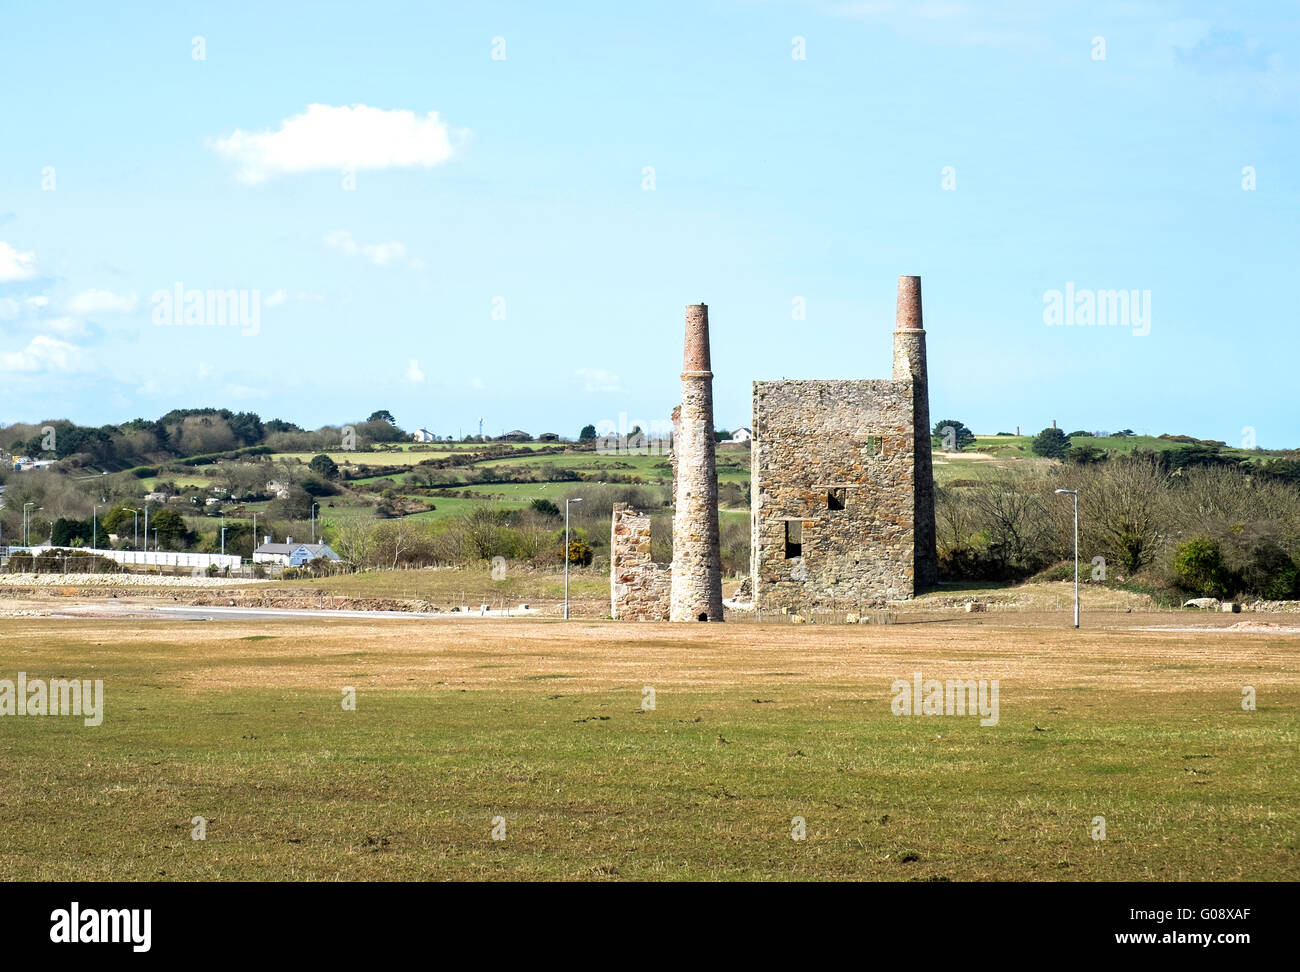 Zurückgefordert ehemaligen Zinnbergbau Land für neue Industrien bei Scorrier in der Nähe von Redruth in Cornwall, Großbritannien Stockfoto